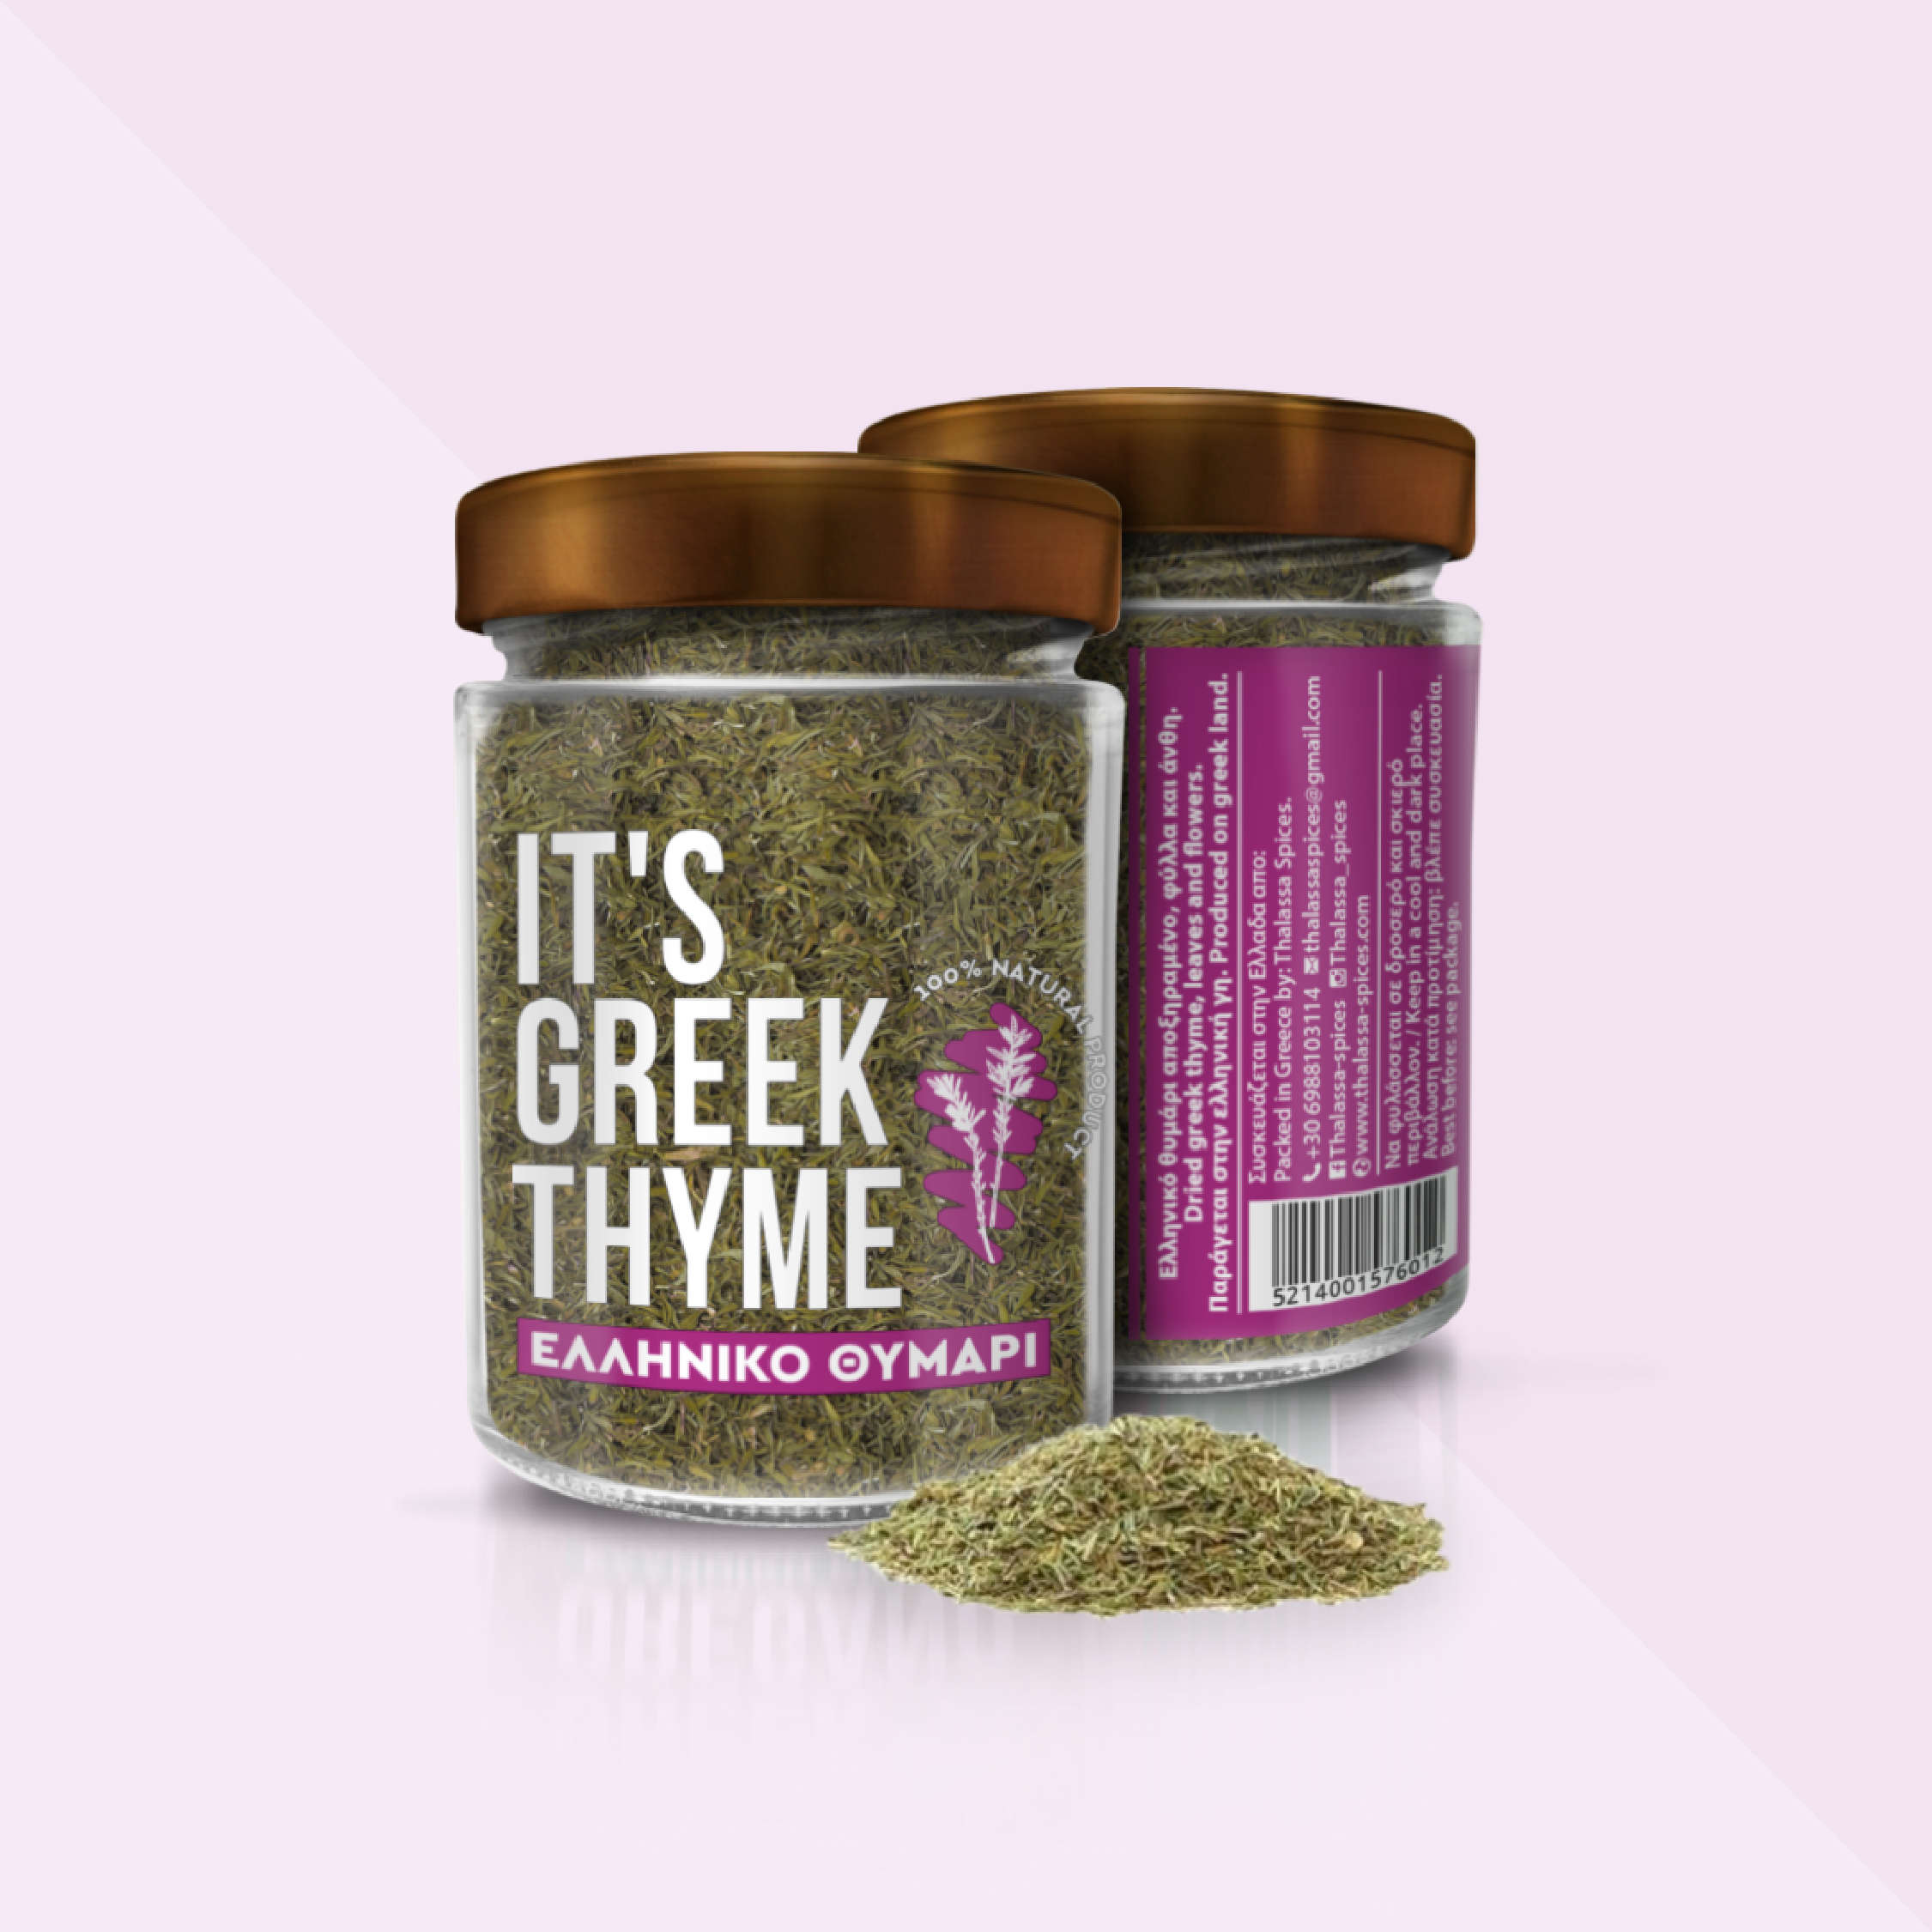 Σχεδιασμός Συσκευασίας για τη σειρά μπαχαρικών IT'S GREEK της Thalassa Spices